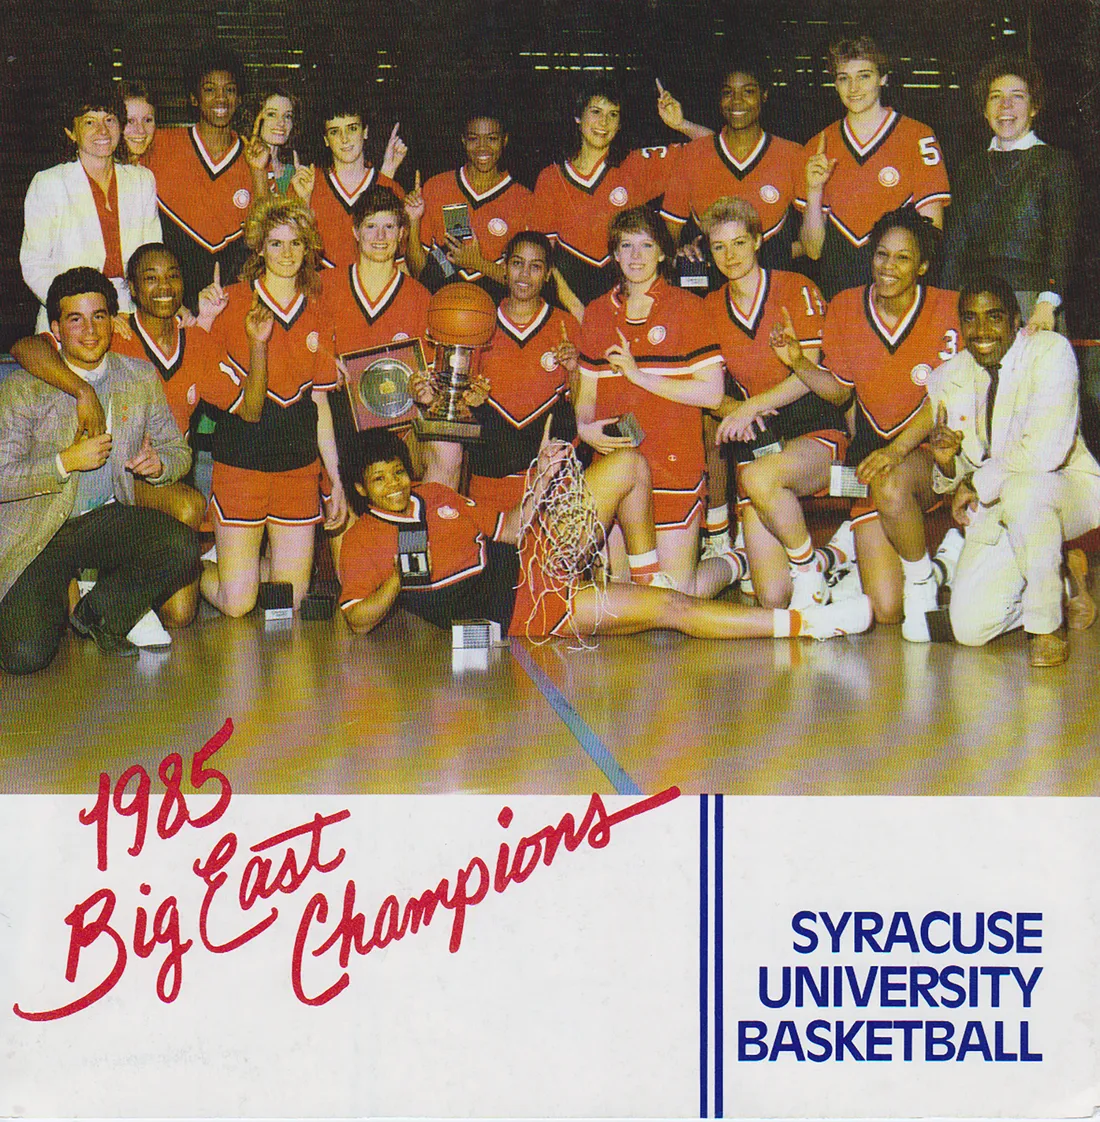 1985 women's basketball team.